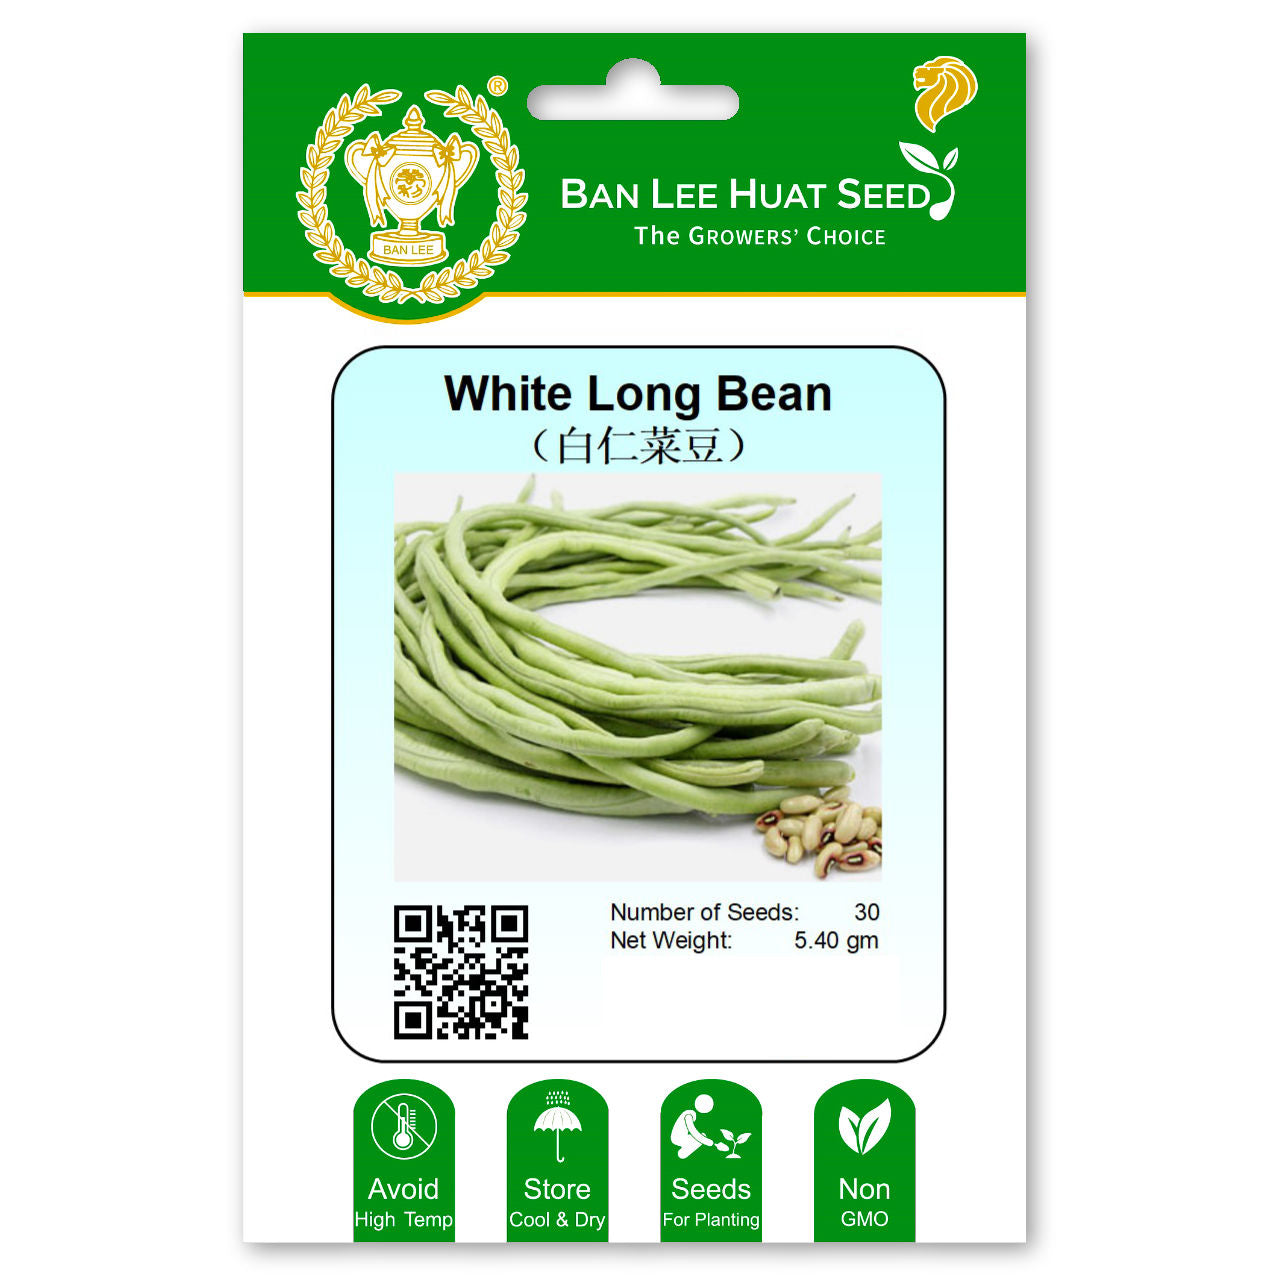 White Long Bean